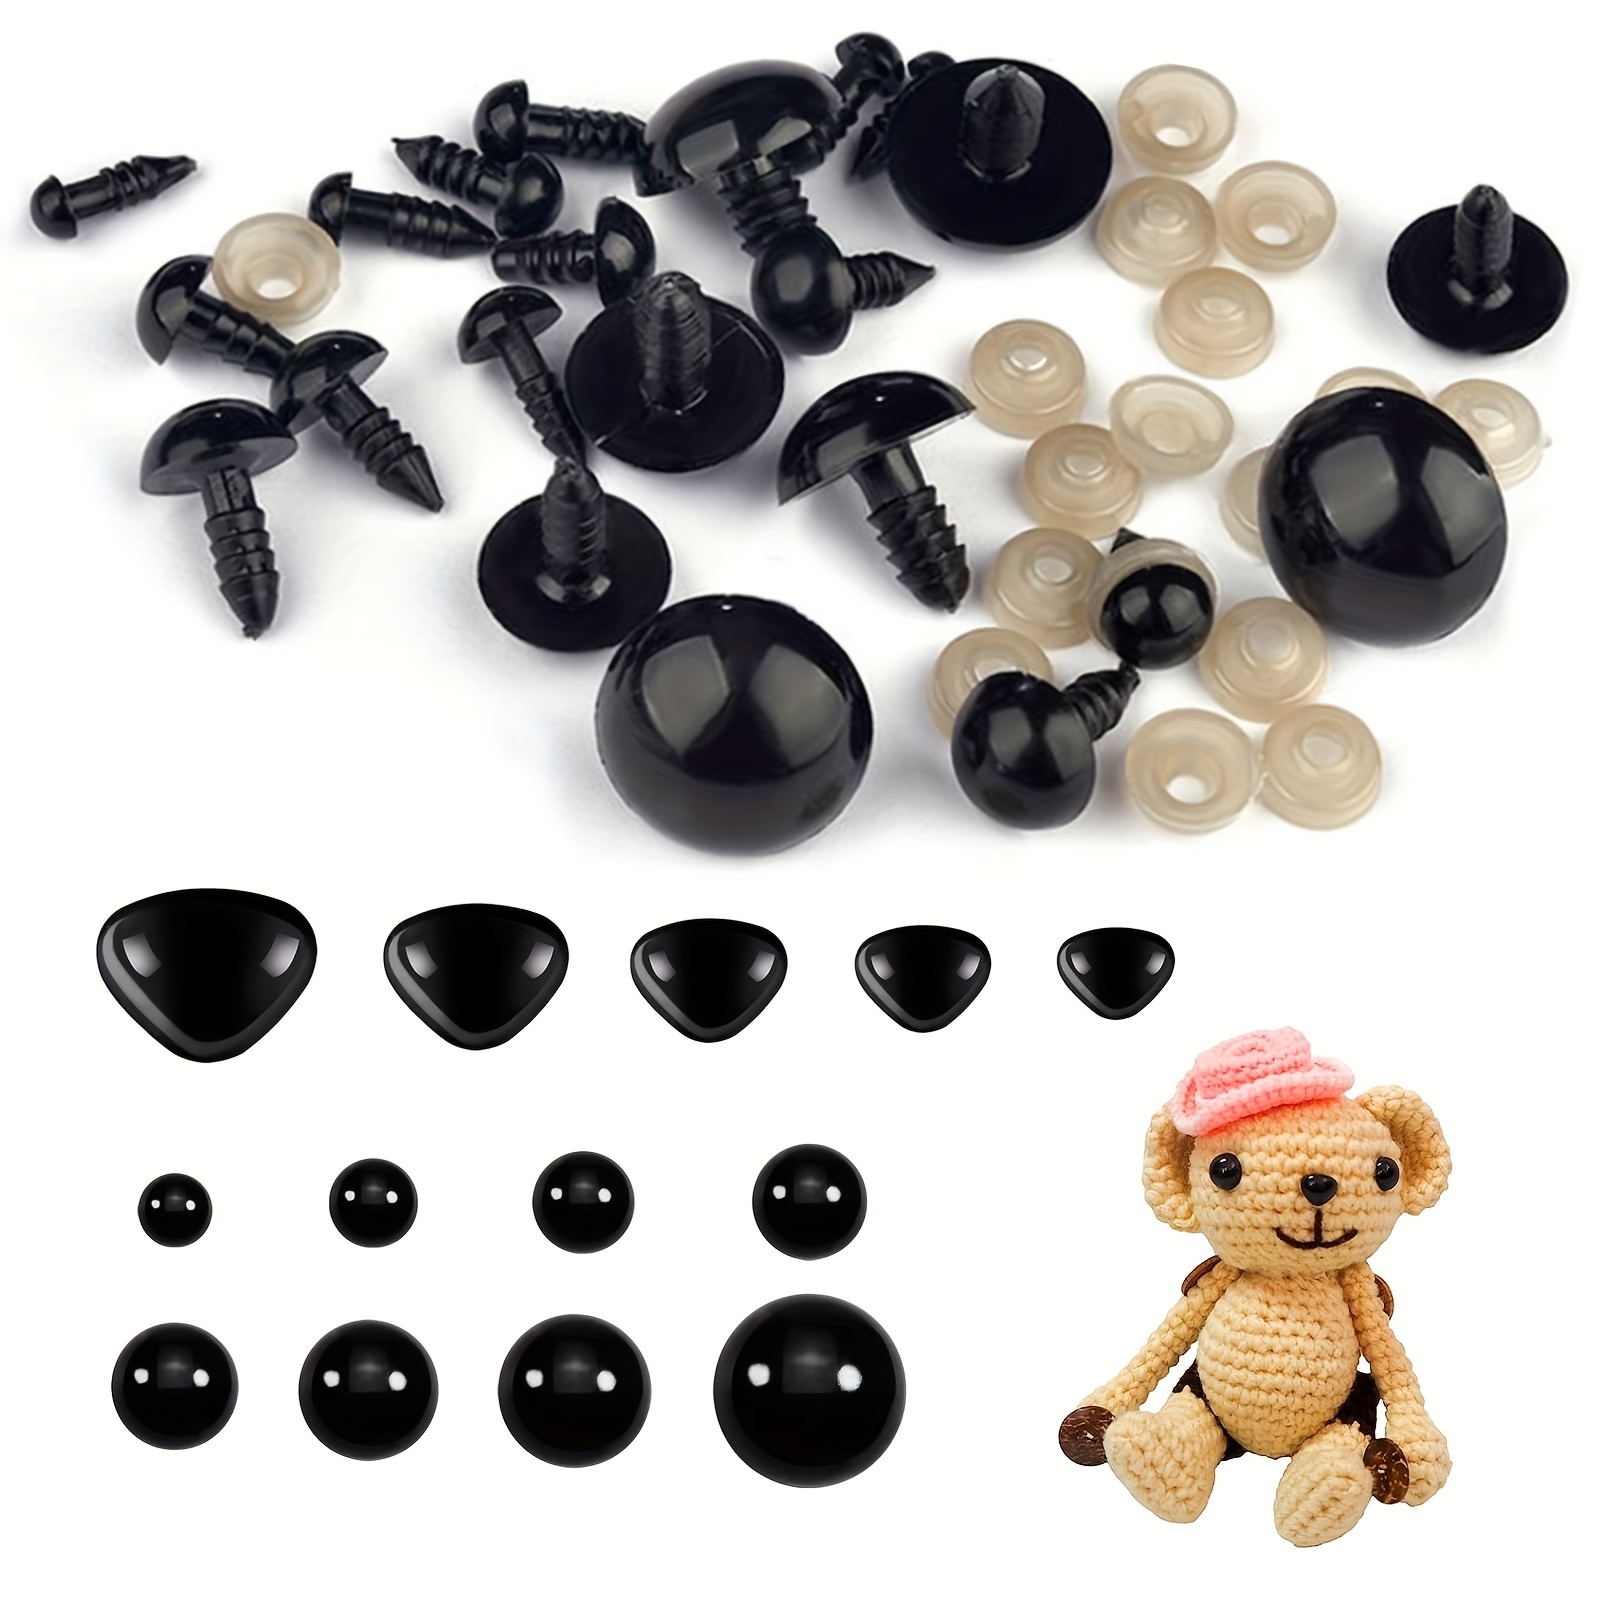 OUTUXED 520 piezas de plástico para ojos y narices de seguridad con  arandelas, ojos de muñeca artesanales, ojos negros de seguridad para  amigurumi